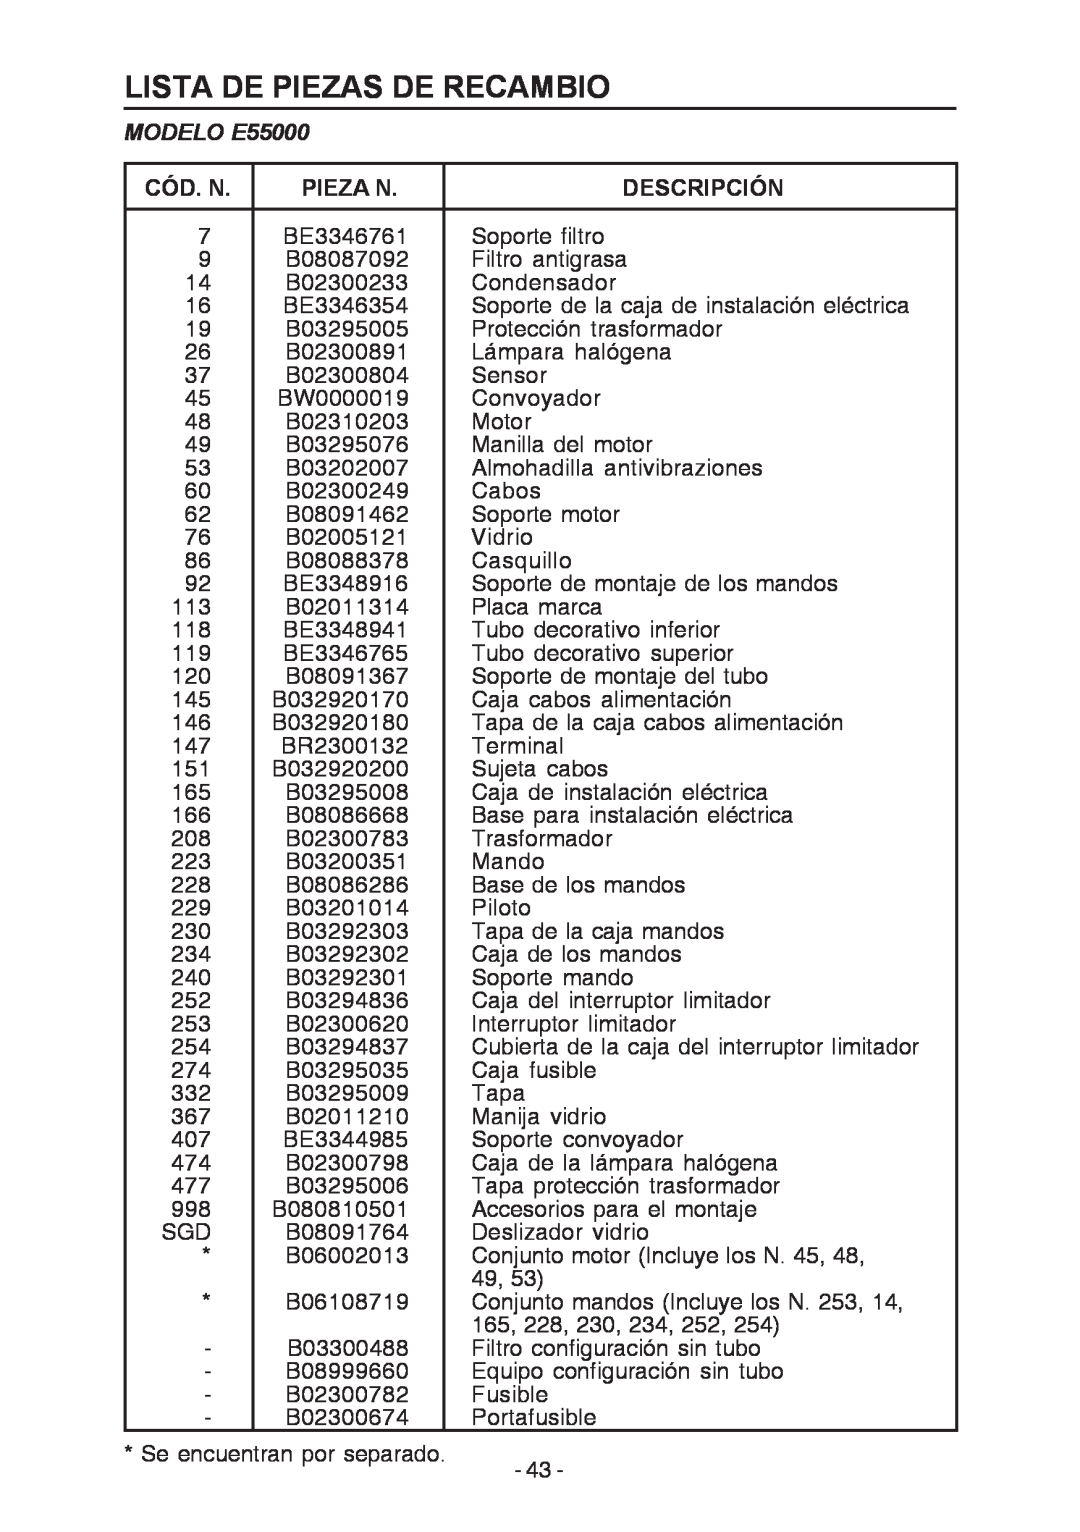 Broan E55000 manual Lista De Piezas De Recambio, Cód. N, Pieza N, Descripción 